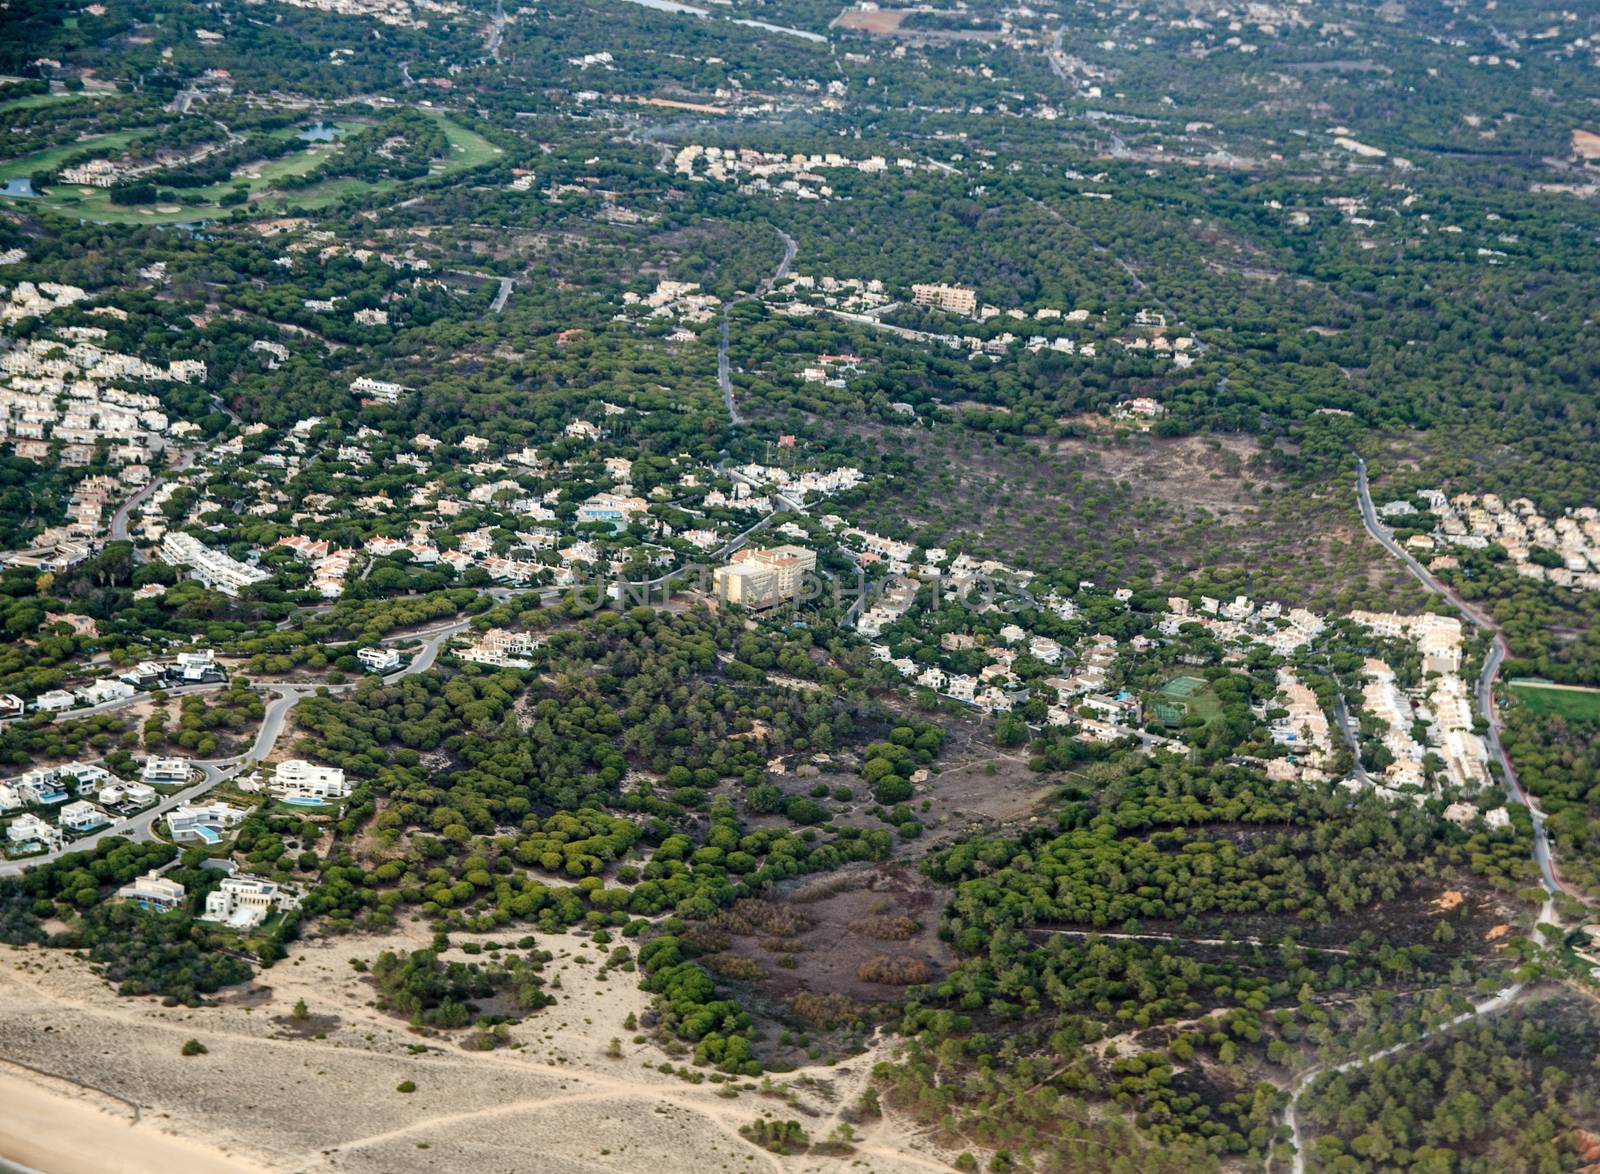 Ria Park Hotel and Spa, Quarteira, Faro - Aerial View by BasPhoto